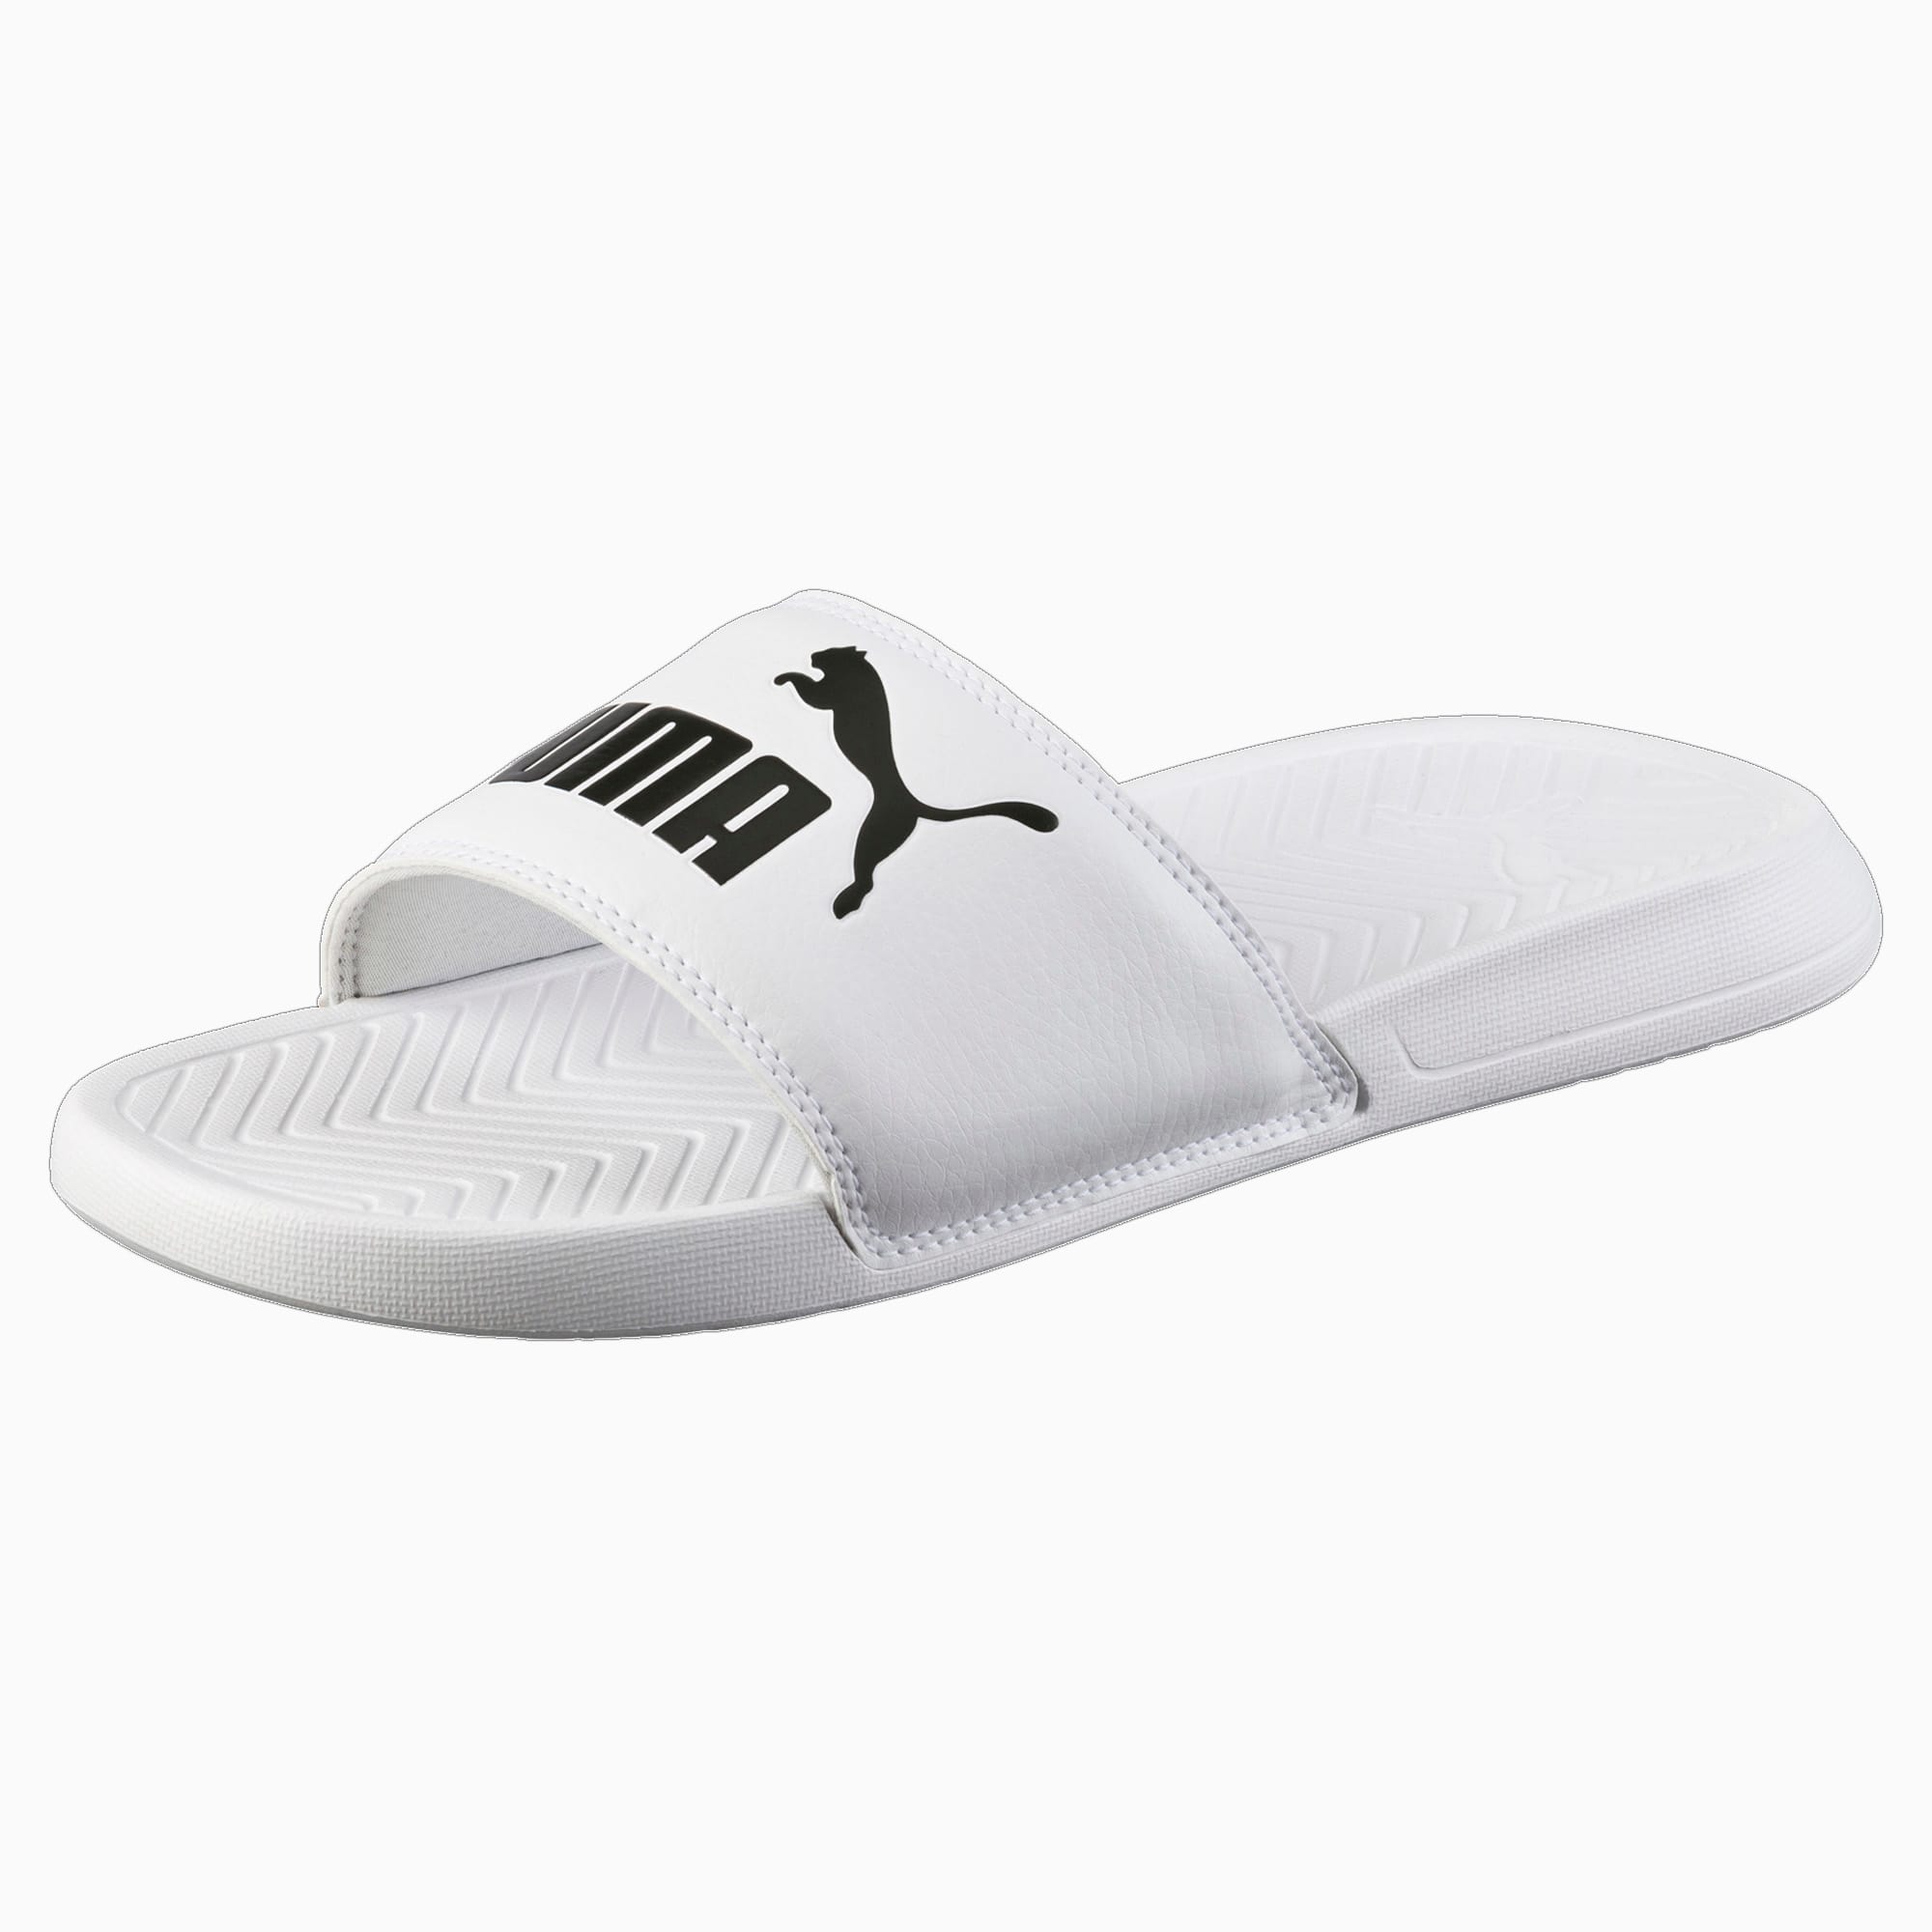 Popcat Slide Sandals | PUMA Gifts under 